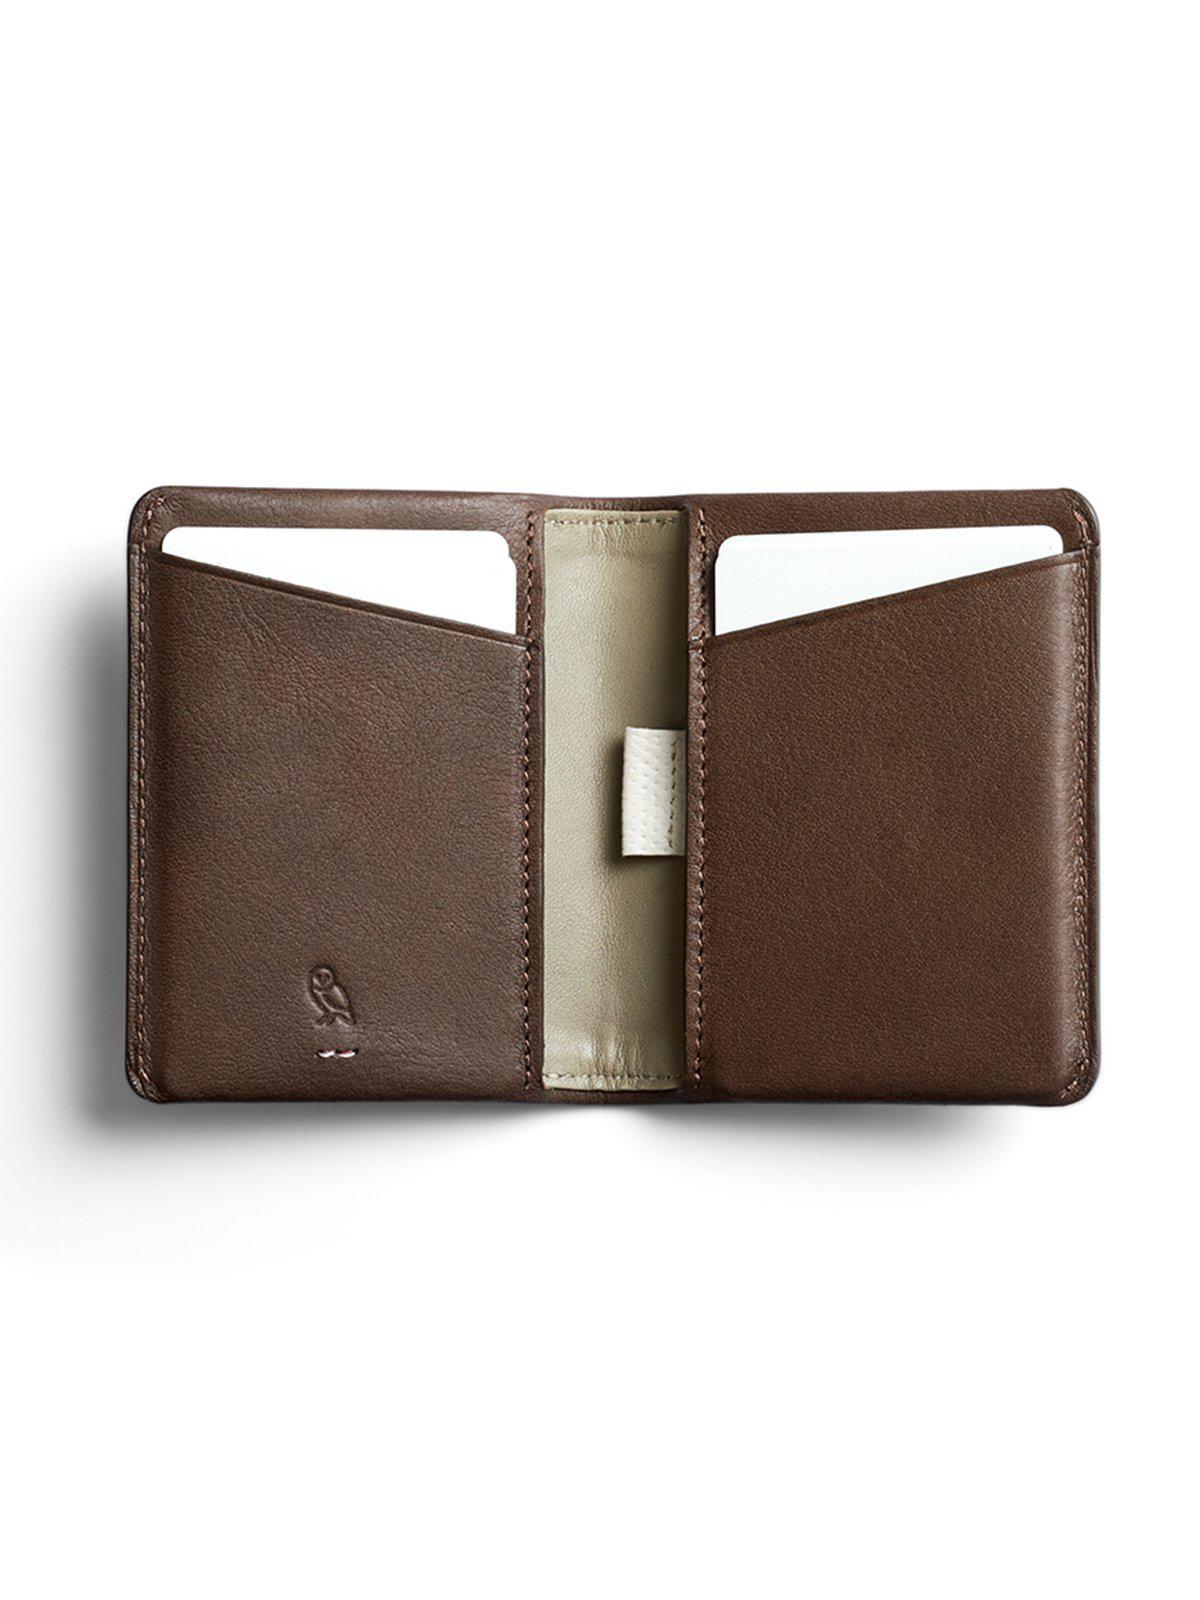 Bellroy Slim Sleeve Wallet Premium Edition Darkwood RFID